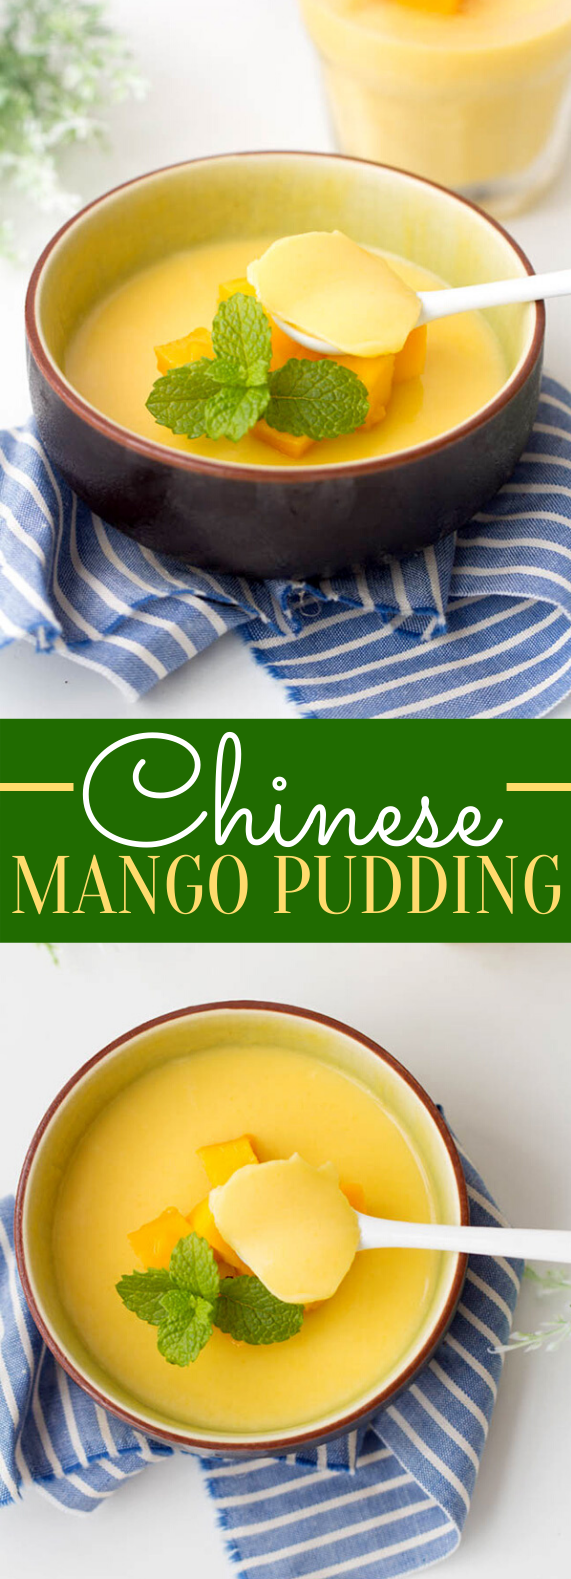 Chinese Mango Pudding #desserts #sweets